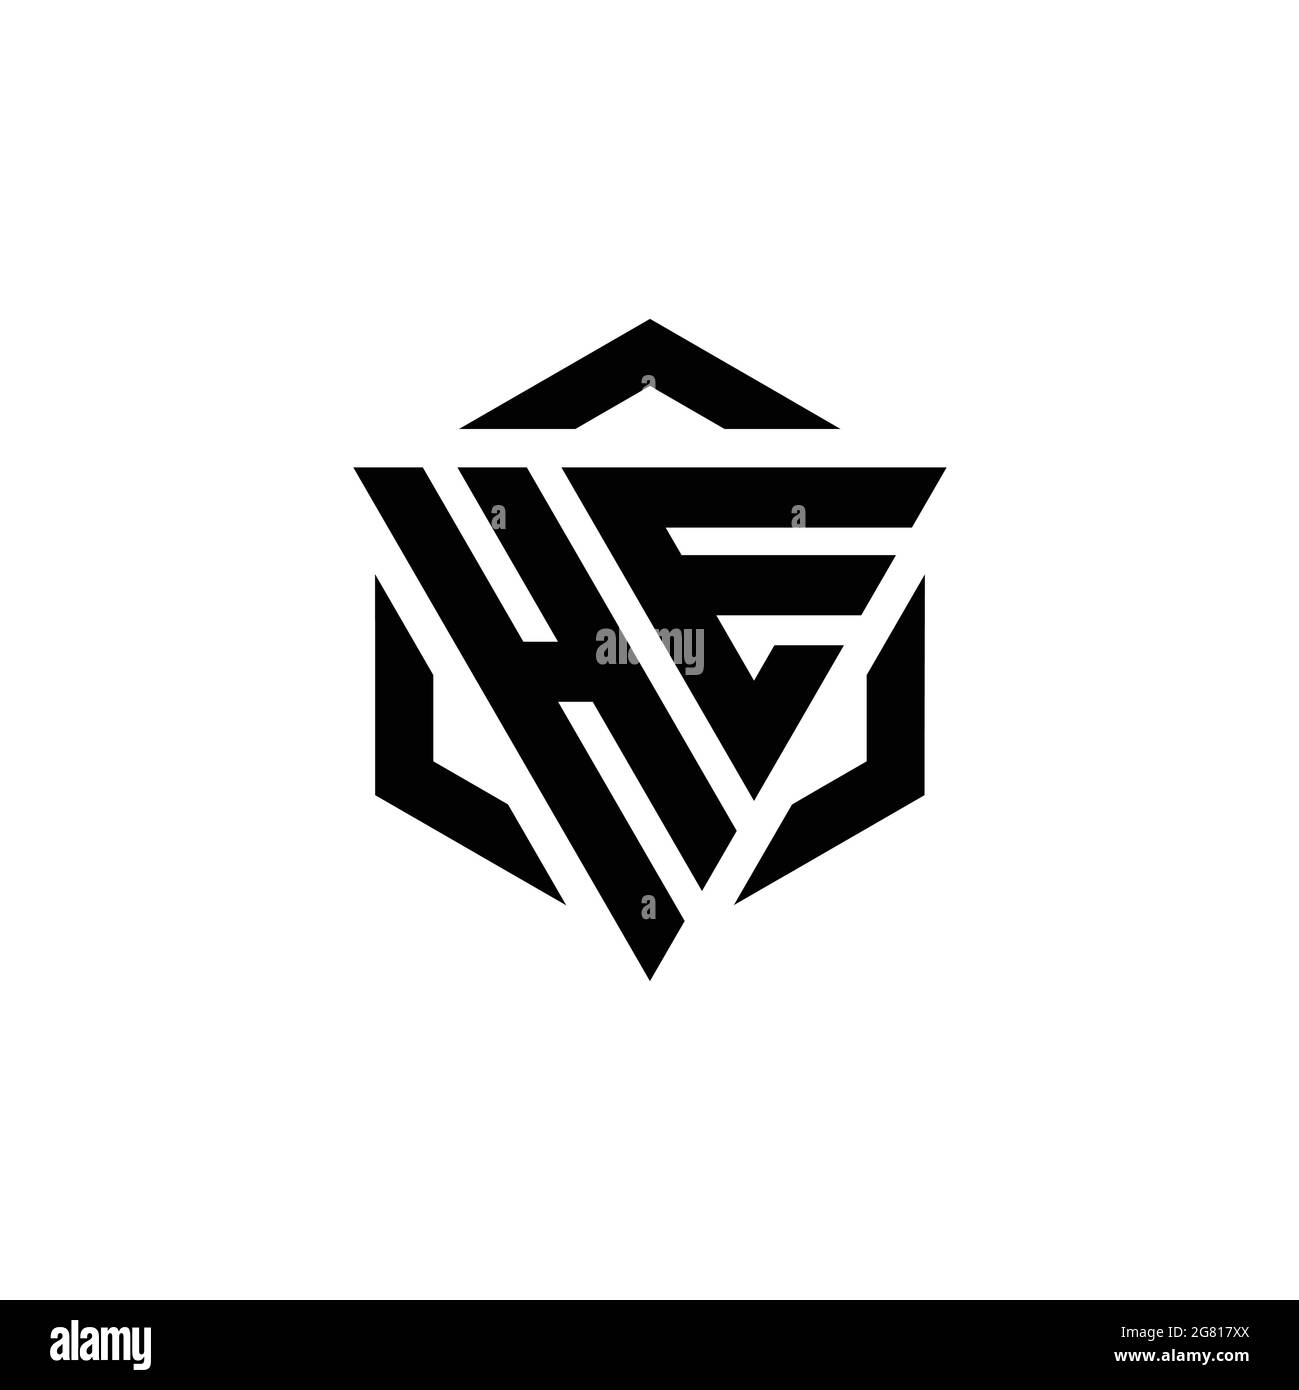 DAS Logo-Monogramm mit Dreieck und Sechseck moderner Designvorlage isoliert auf weißem Hintergrund Stock Vektor